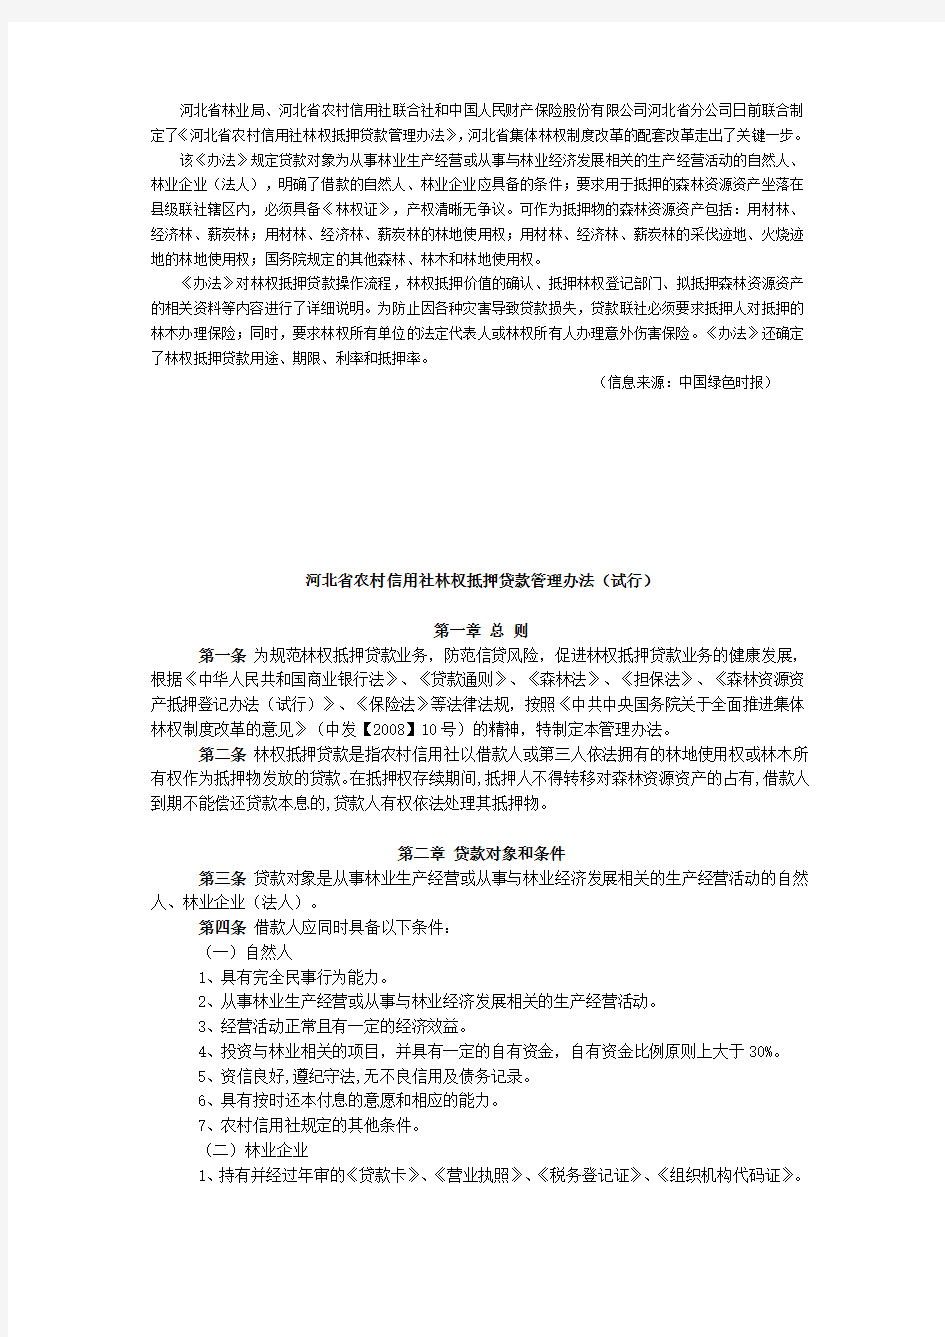 河北省农村信用社林权抵押贷款管理办法(试行)